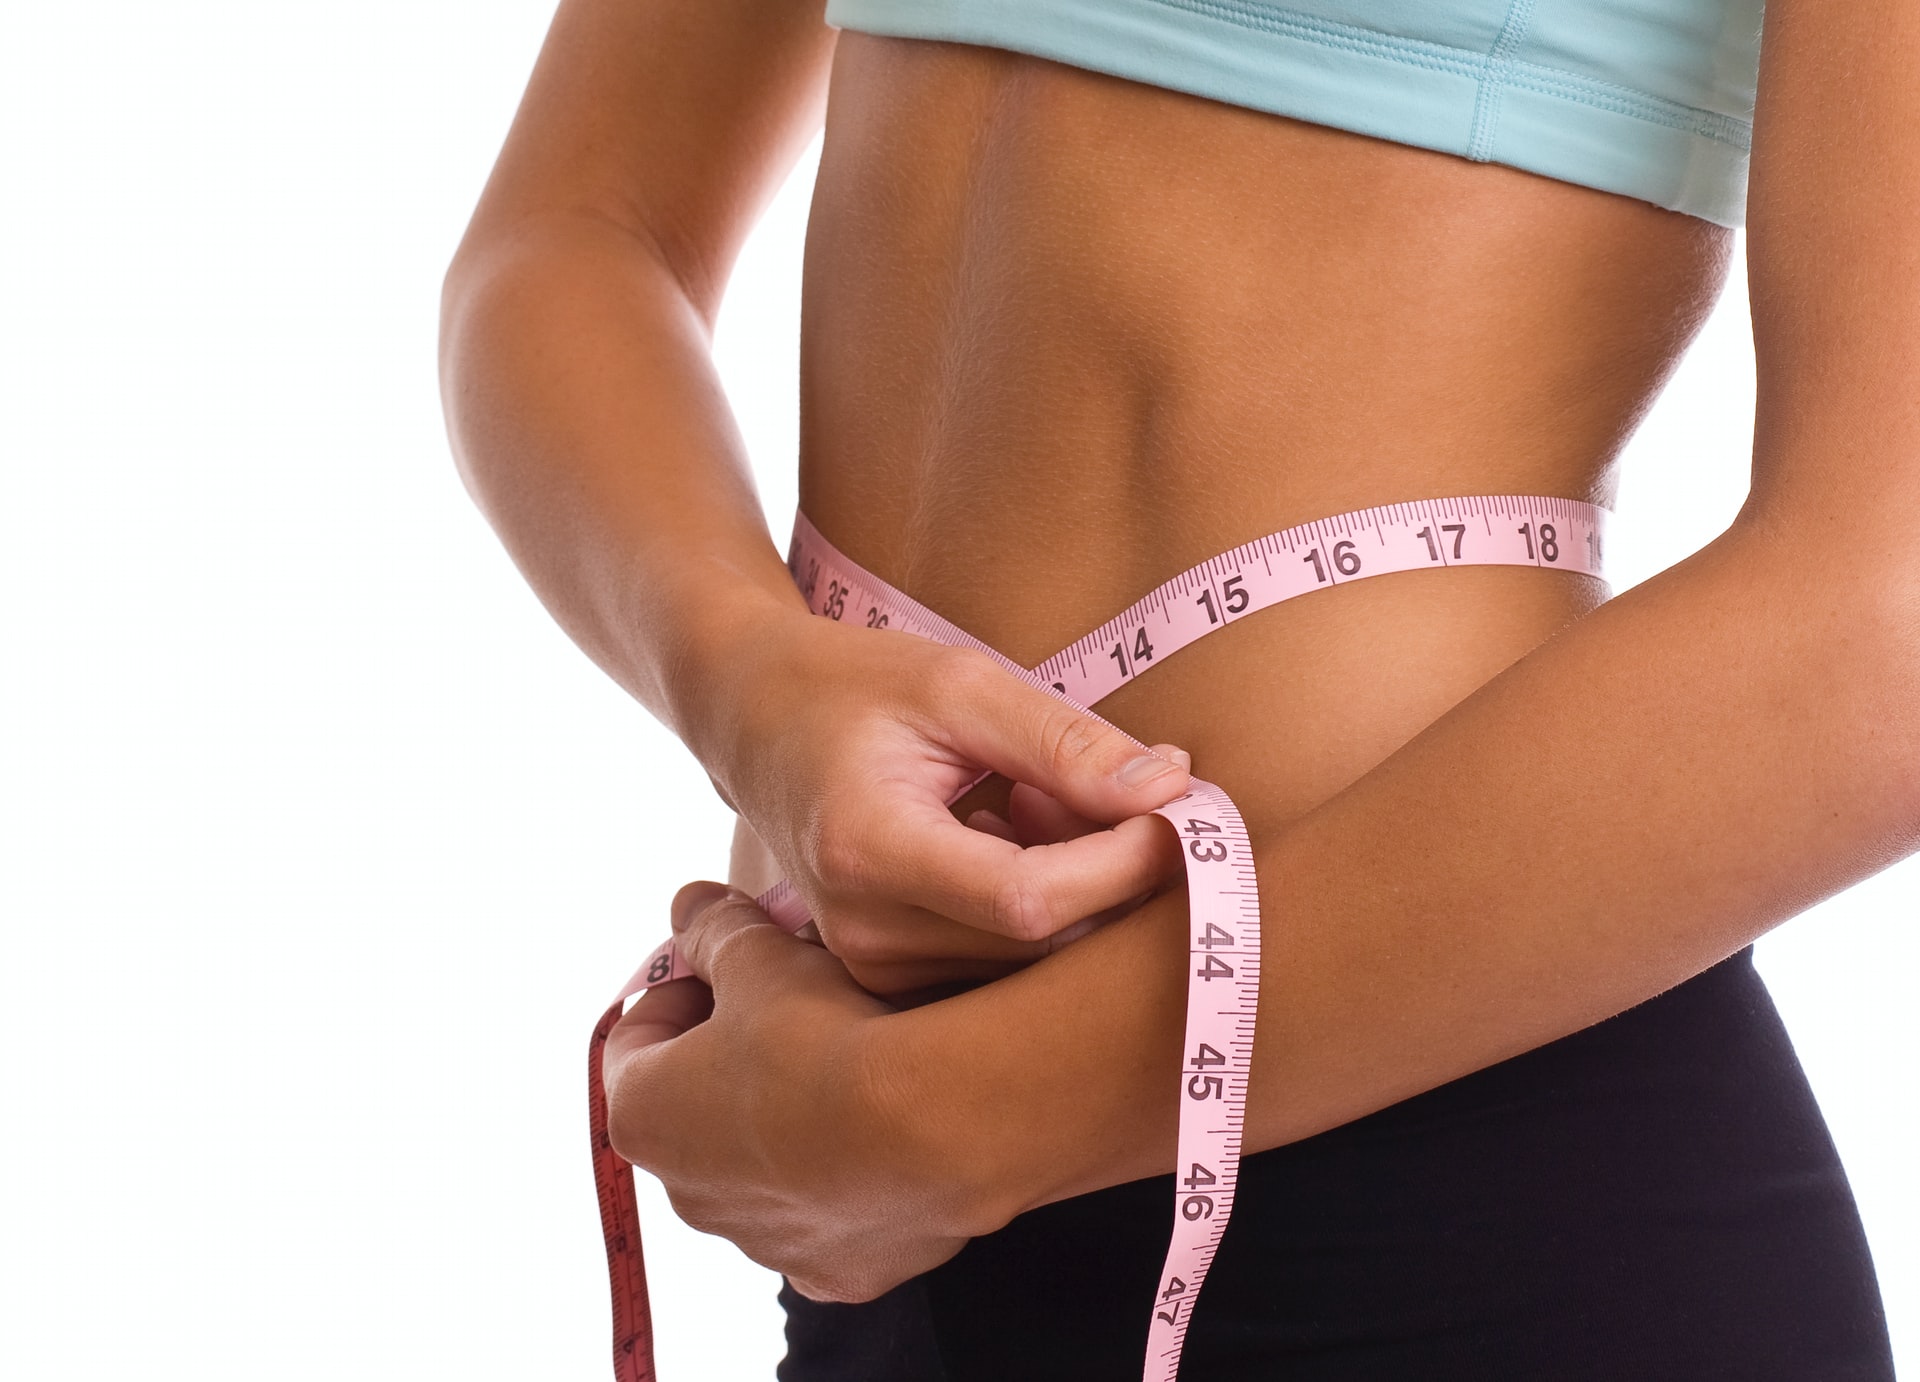 Απώλεια βάρους 2 κιλά/μήνα: Πόσες θερμίδες αντιστοιχούν σε 1 κιλό σωματικού λίπους